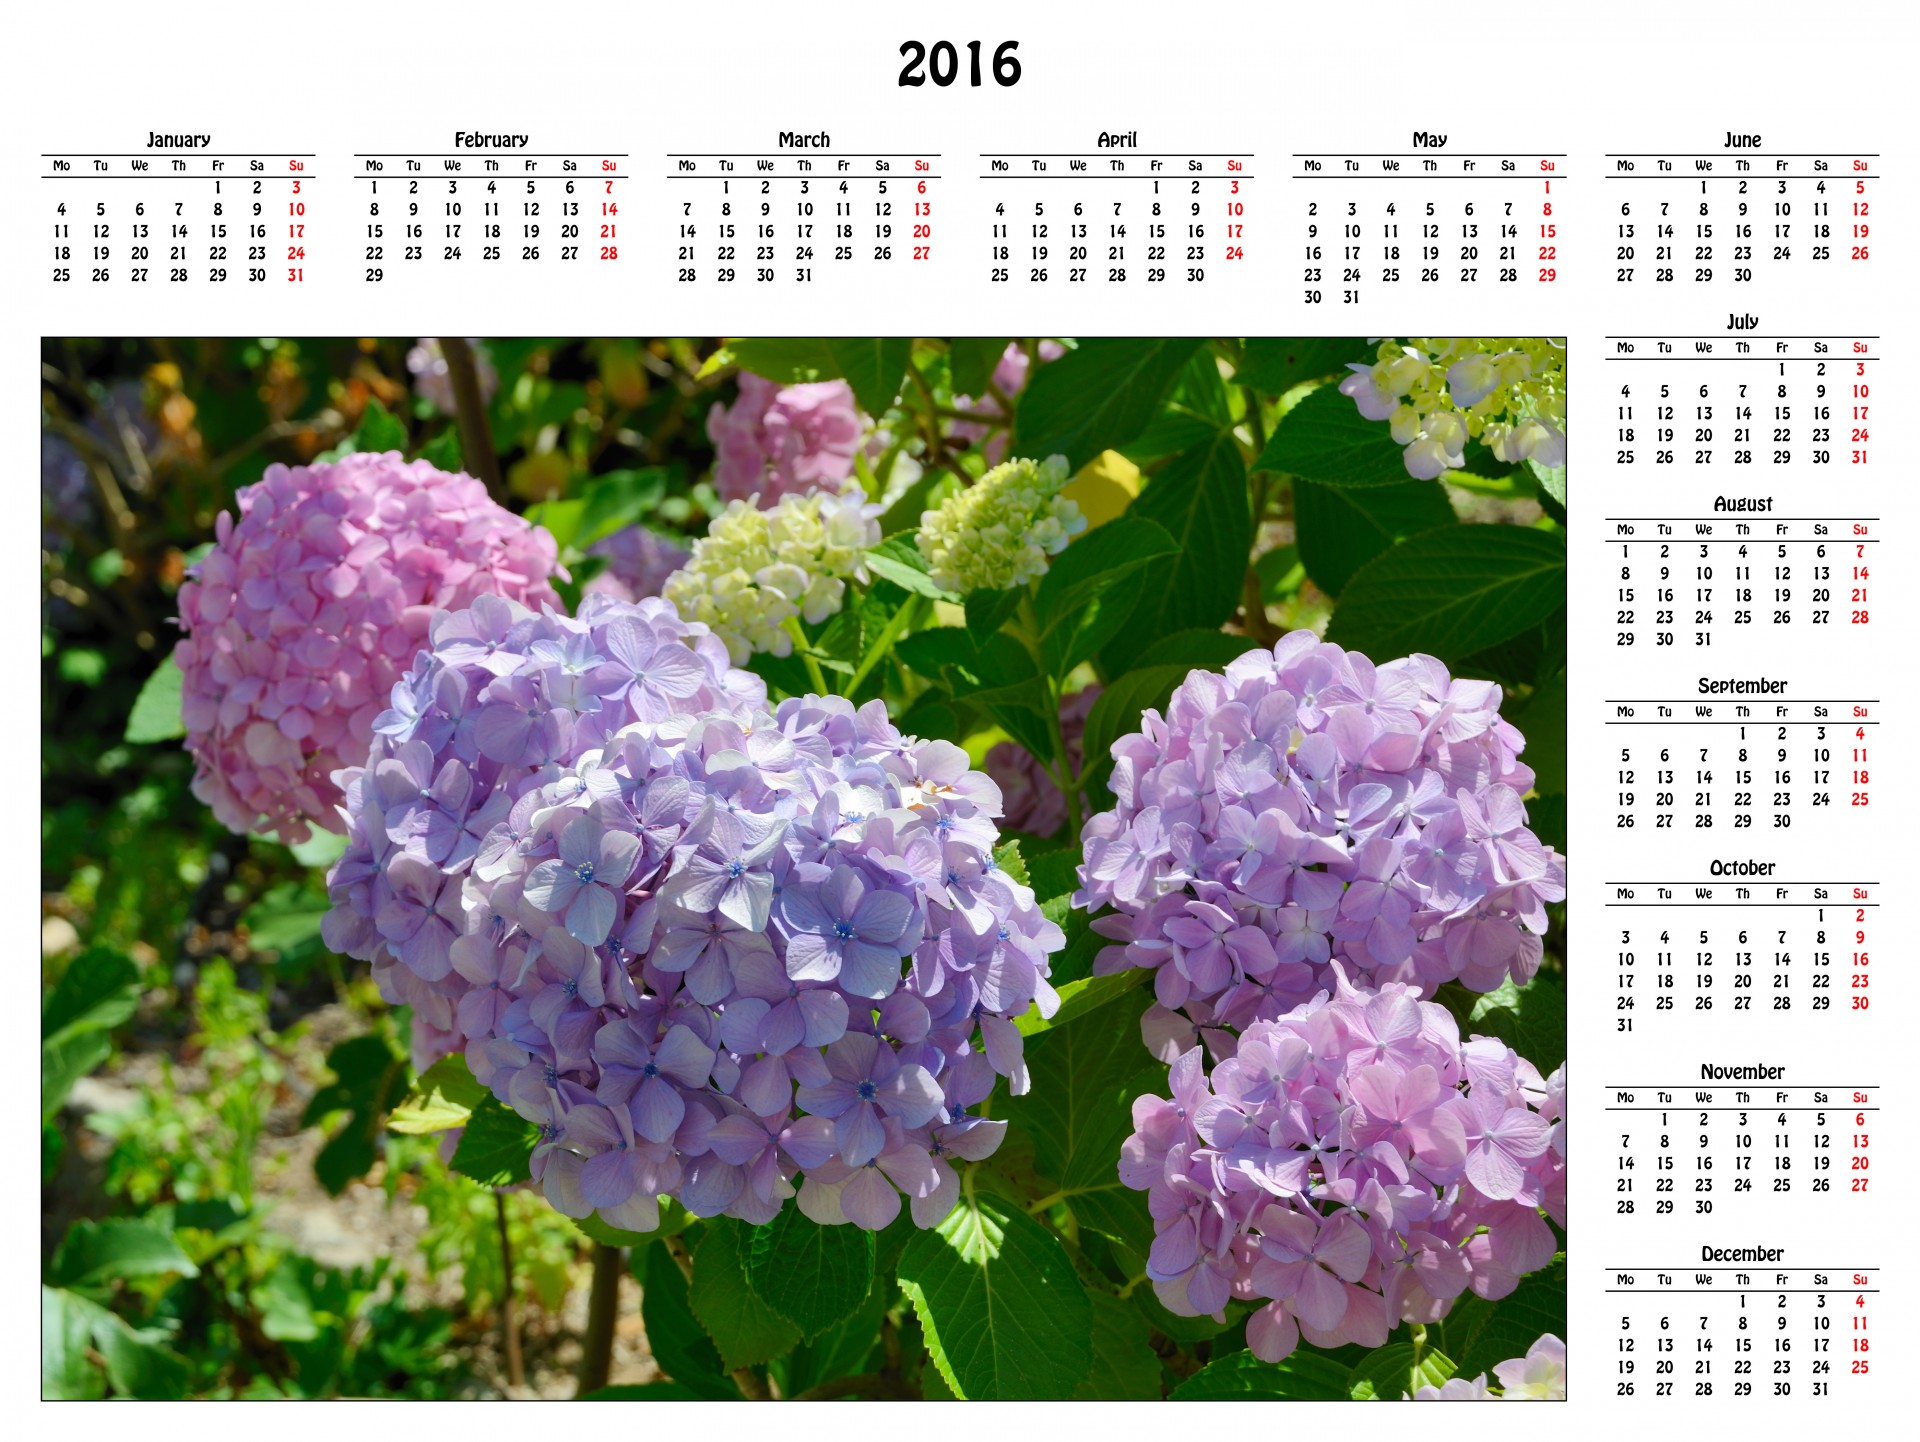 2016 calendar 2016 calendar free photo